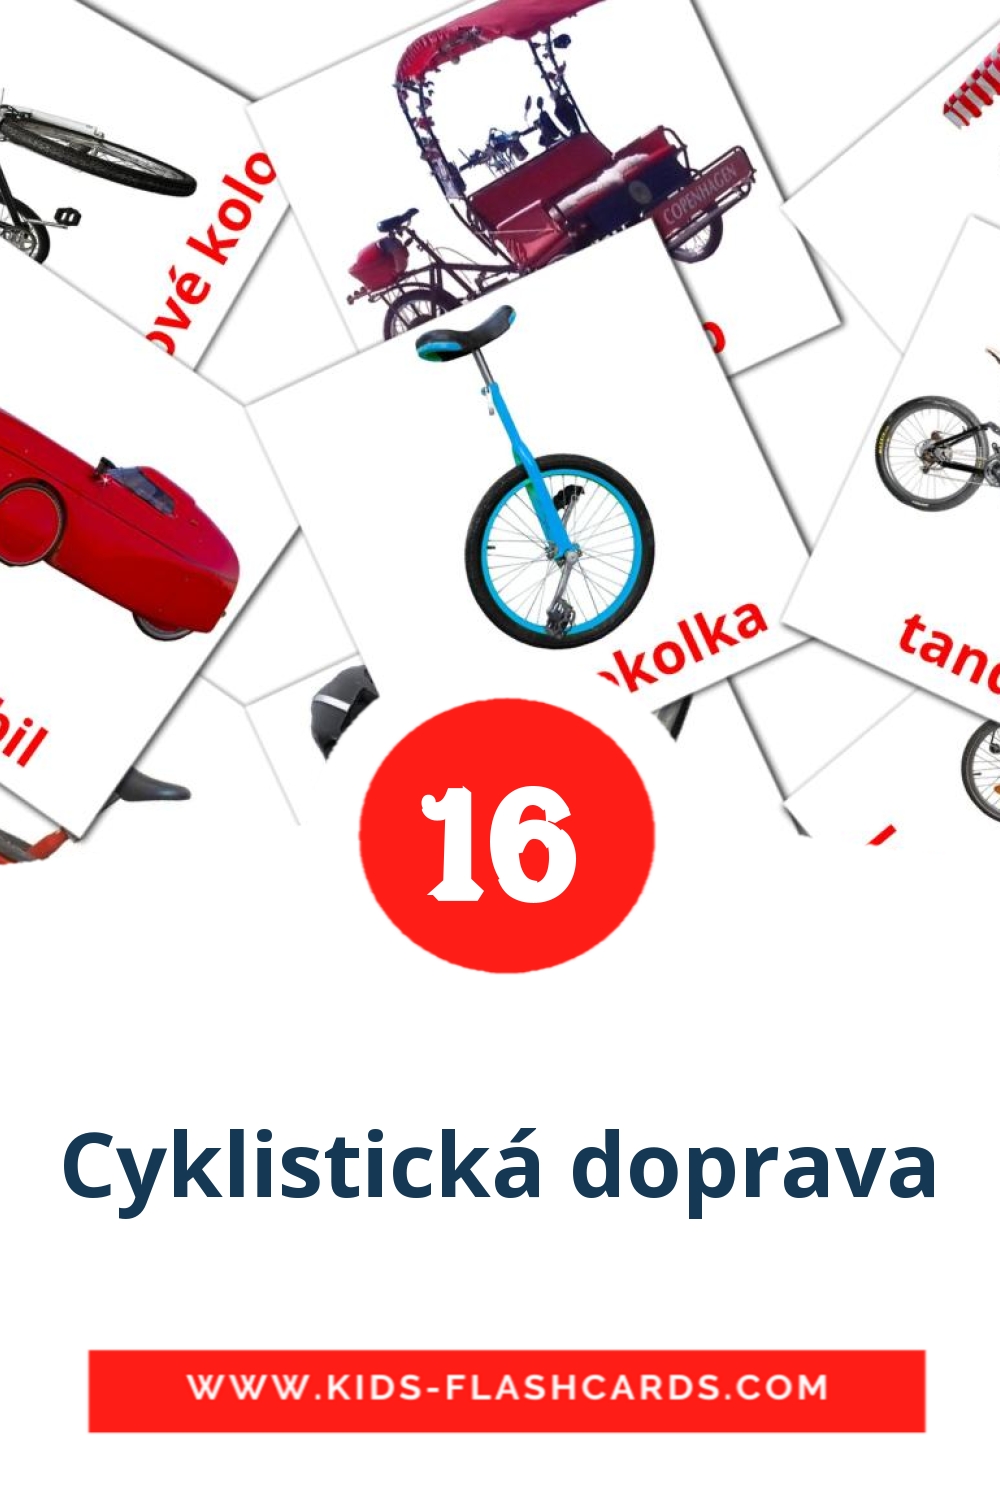 16 Cyklistická doprava Bildkarten für den Kindergarten auf Tschechisch